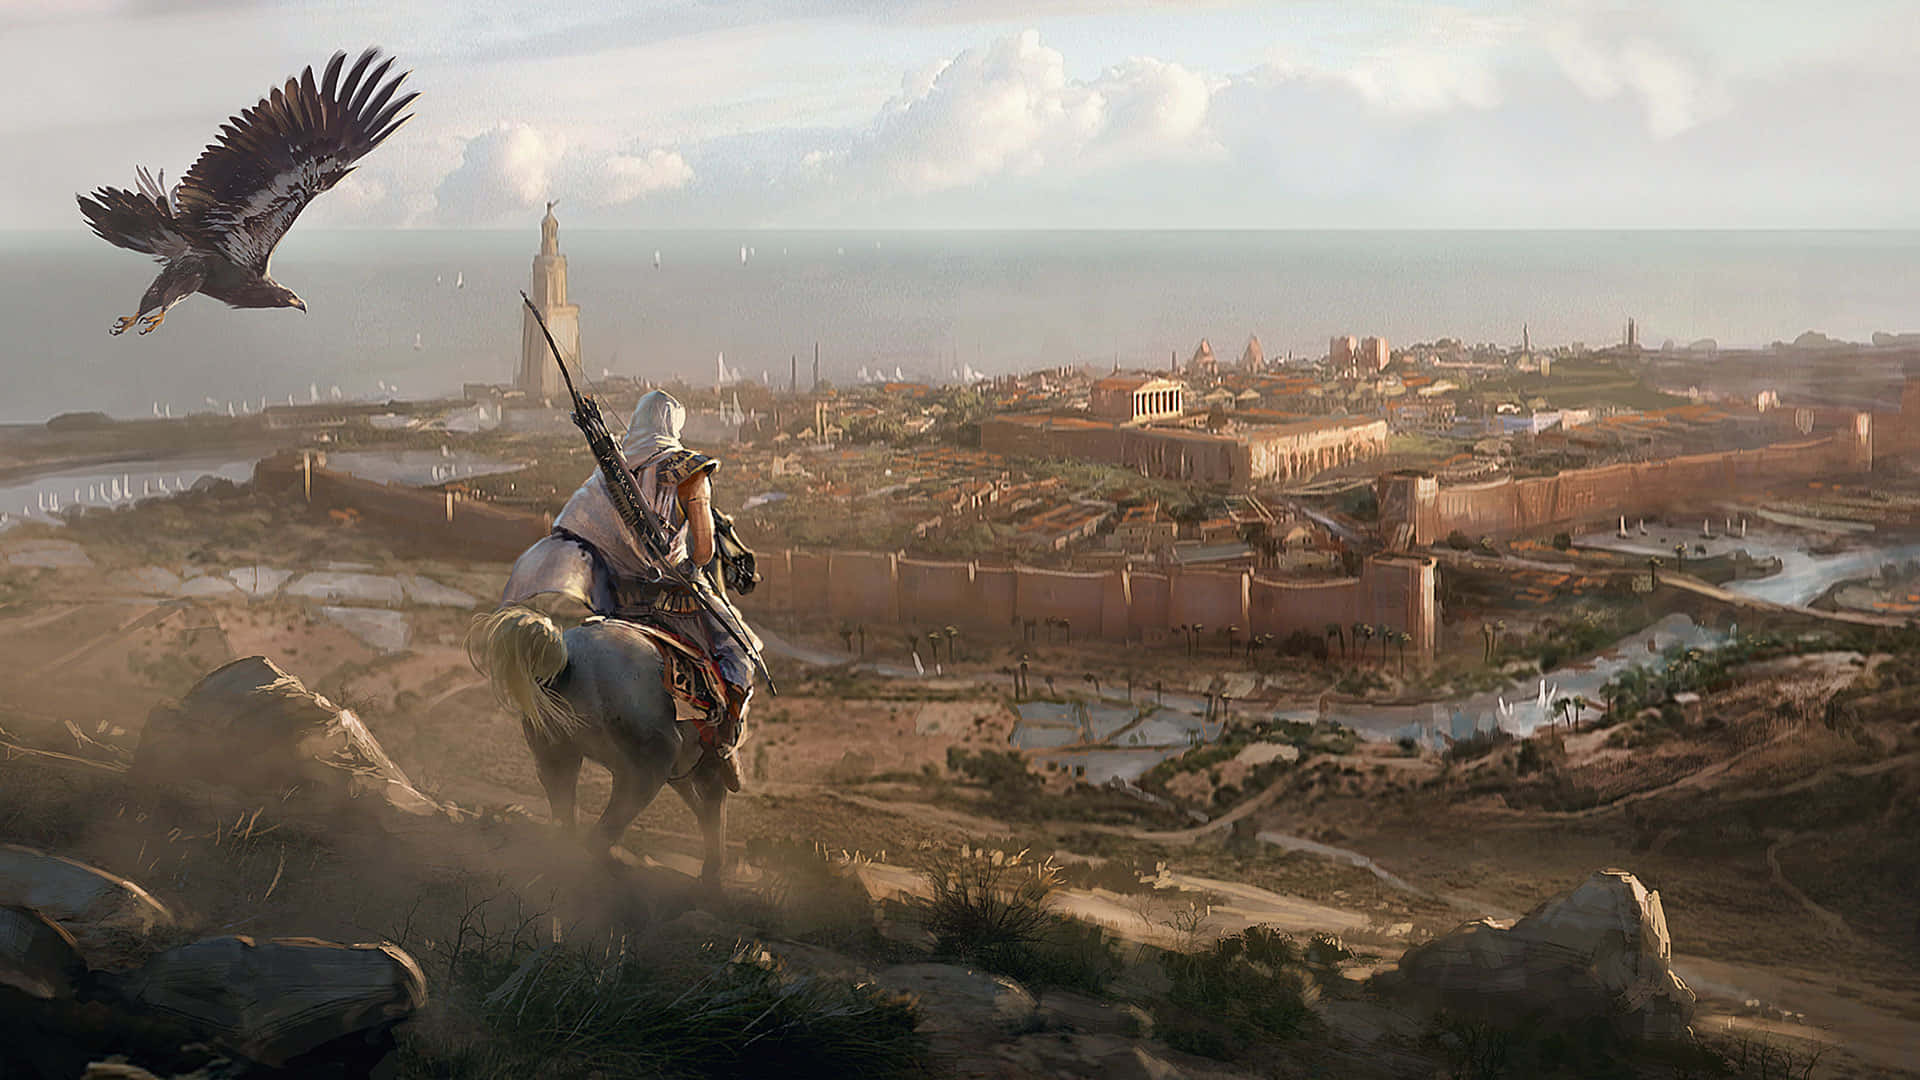 Entdeckedie Uralten Geheimnisse Ägyptens In Assassin's Creed Origins